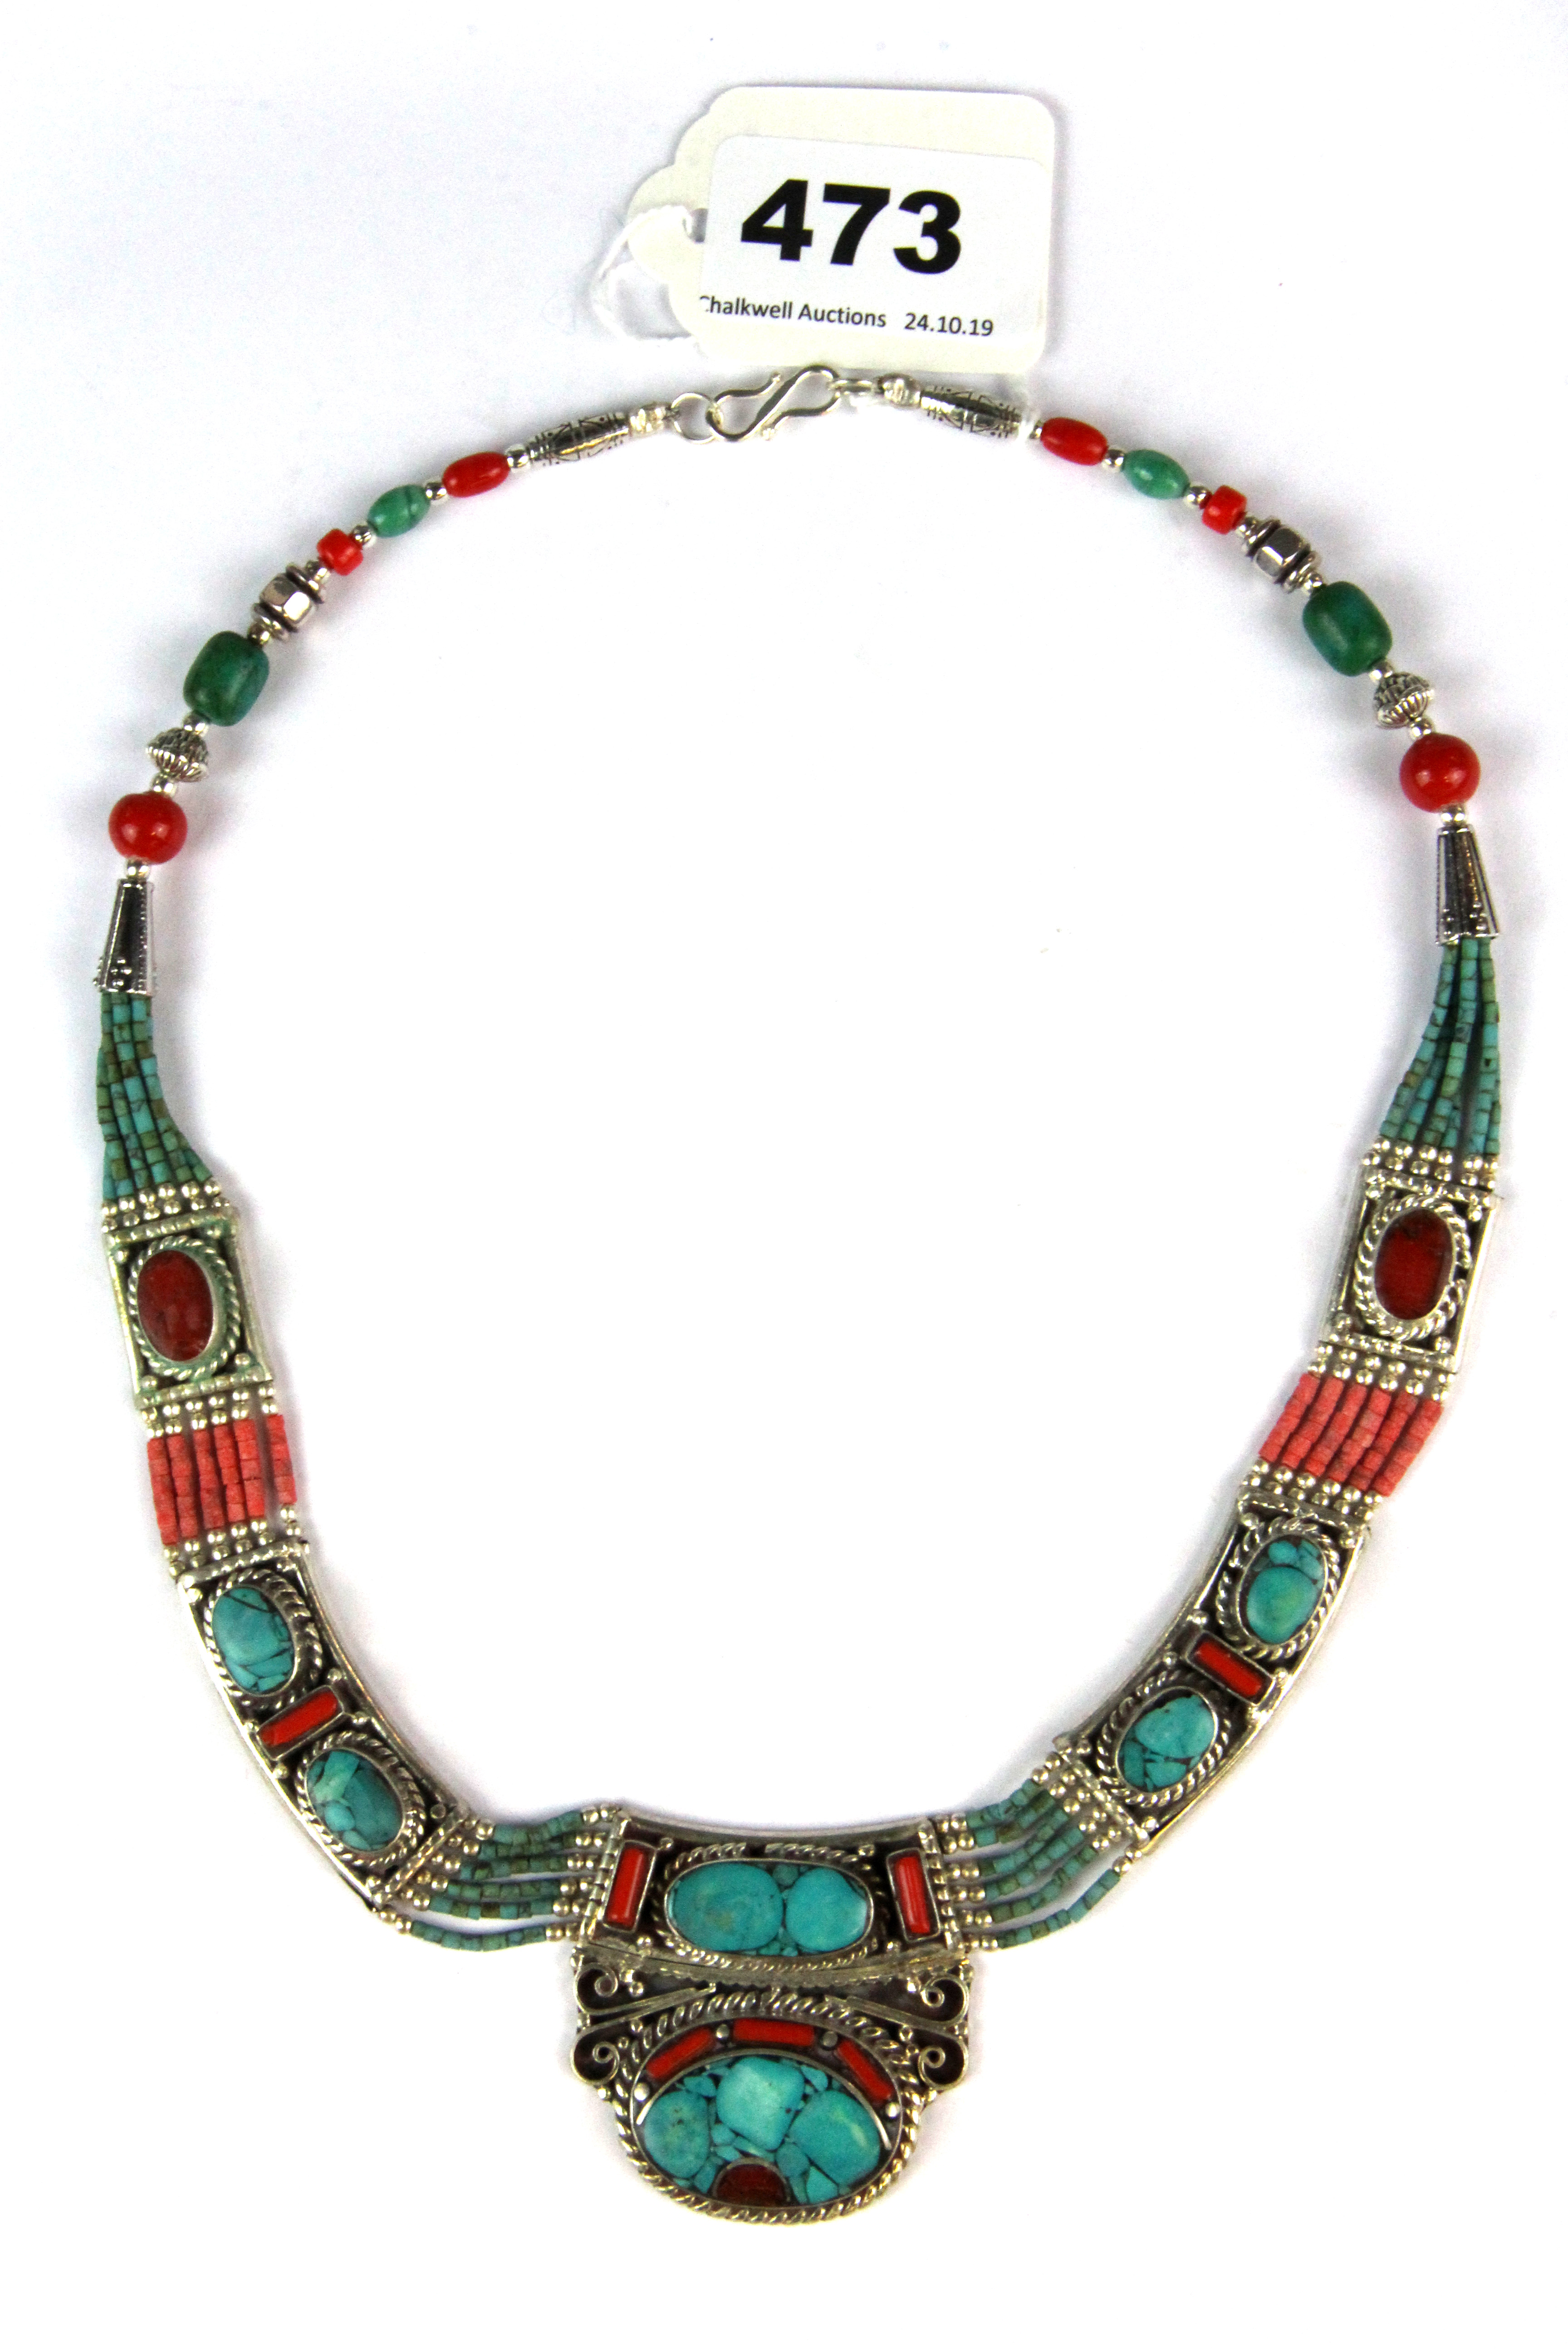 A Tibetan white metal tribal necklace.